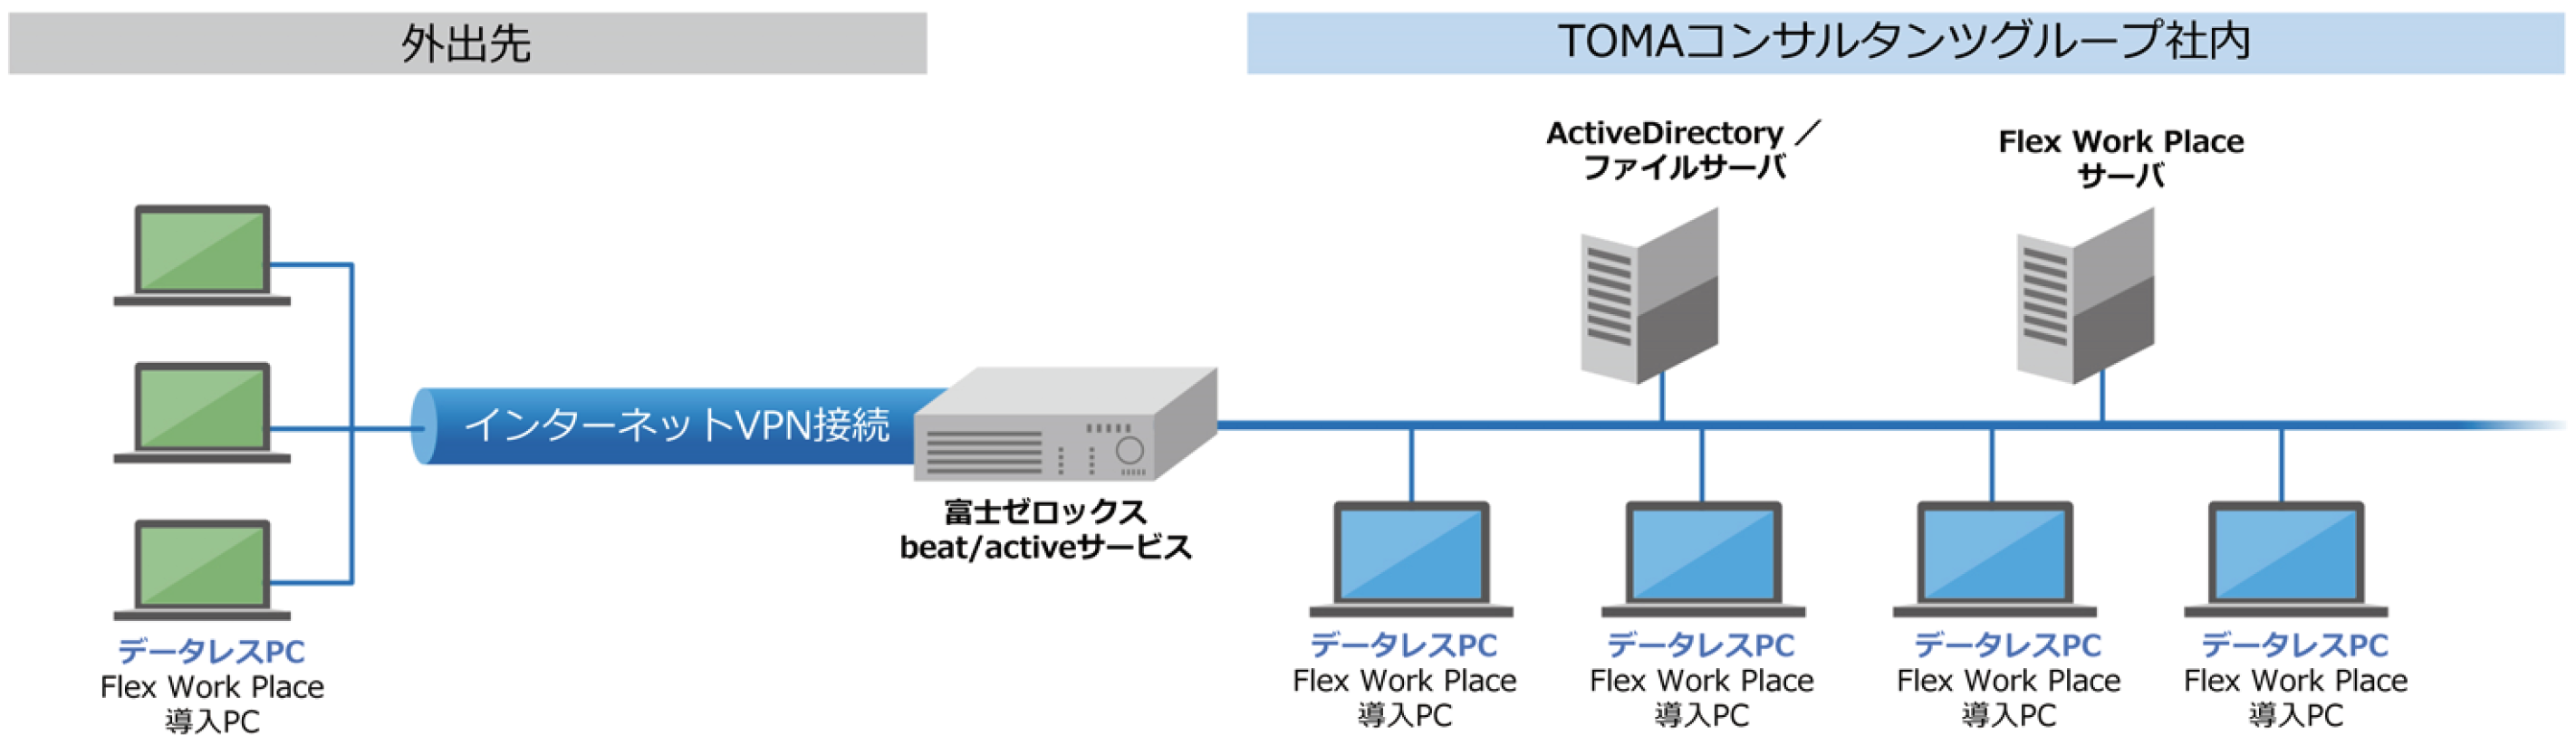 TOMAコンサルタンツグループ株式会社　Flex Work Place システム構成図